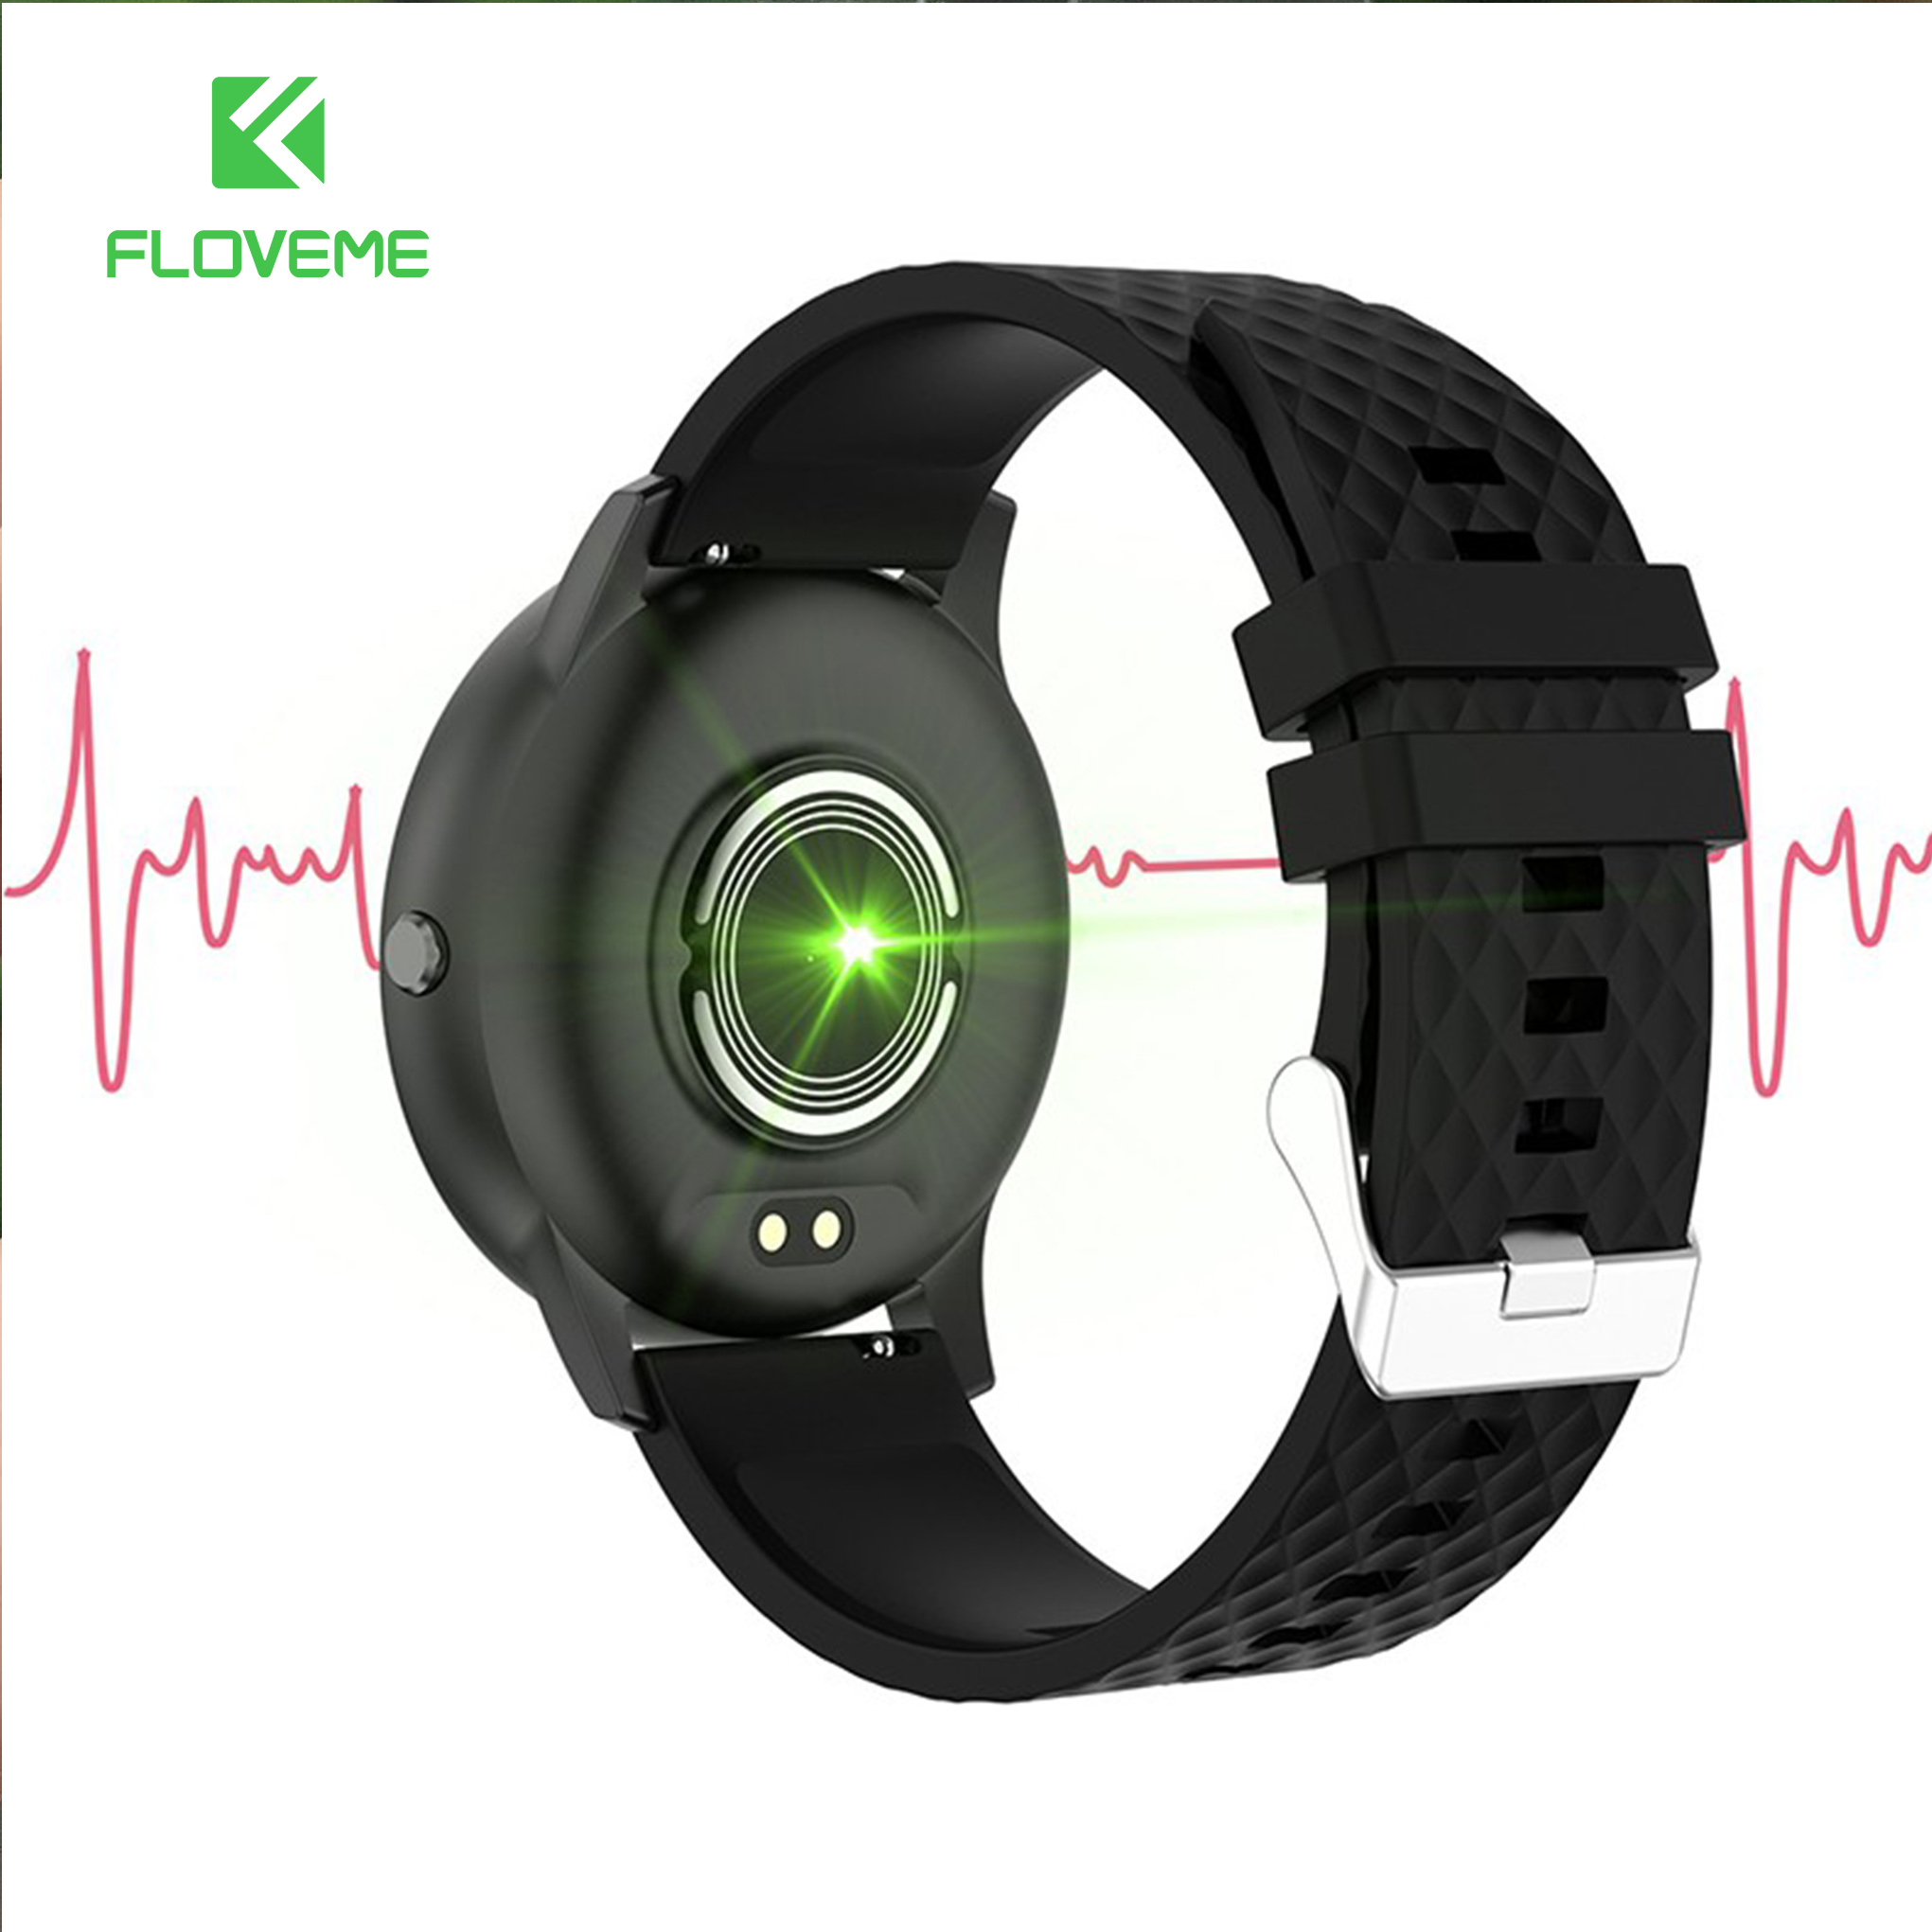 Đồng hồ thông minh H30 FLOVEME - Kết nối Bluetooth 5.0 - Cảm ứng mượt  - Chống nước ip 68 - Đếm bước chân - Theo dõi giấc ngủ - Hàng chính hãng